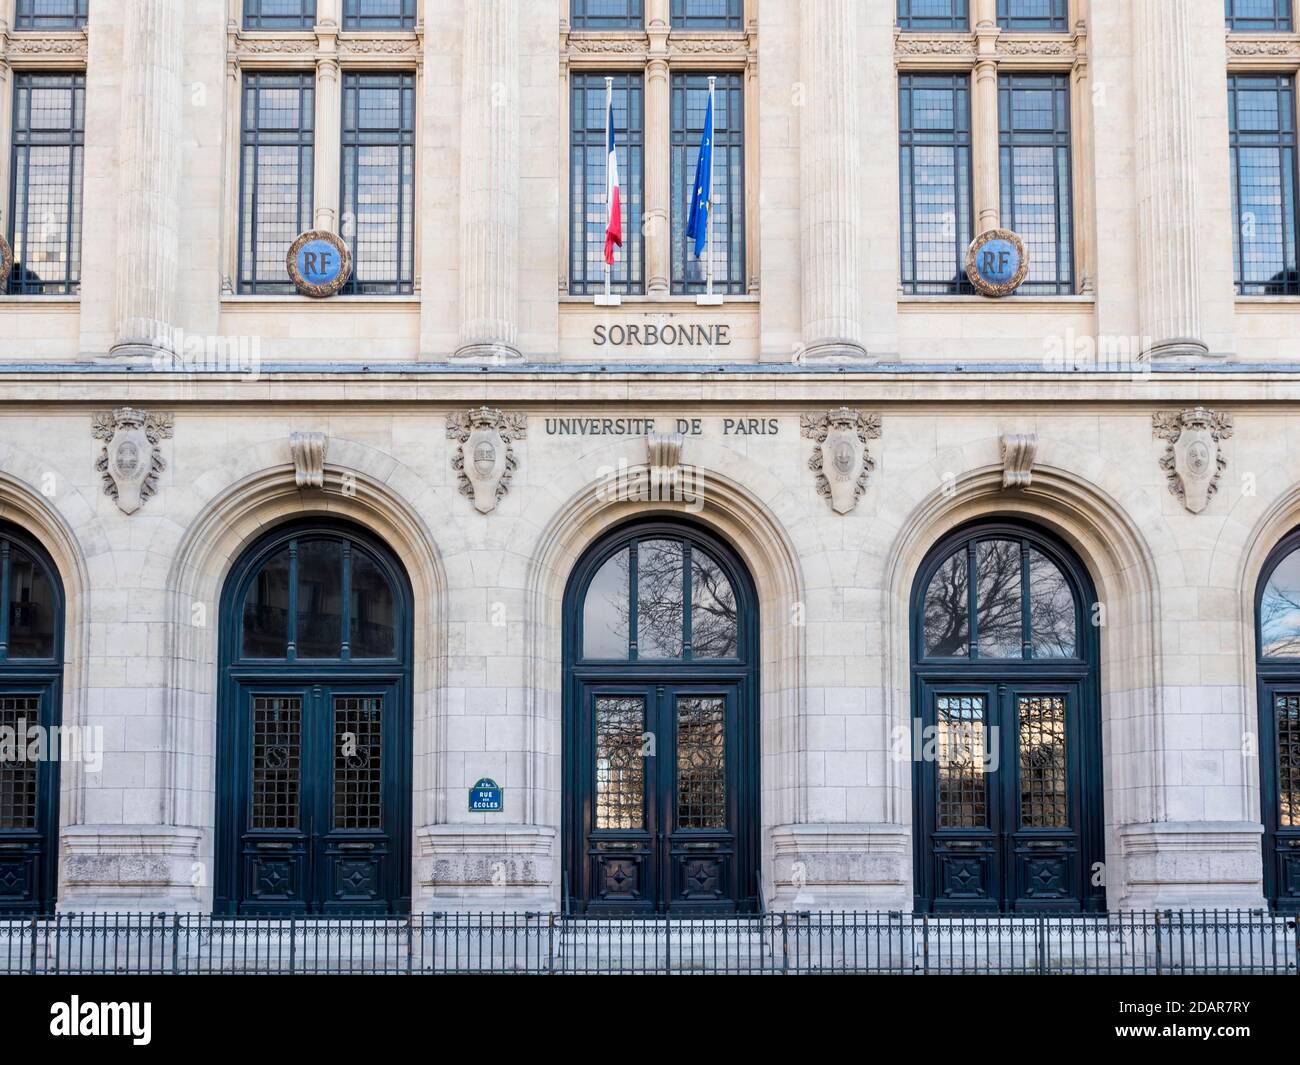 Fassade und Eingang zum Universitätsgebäude der Sorbonne, Paris, Frankreich Stockfoto